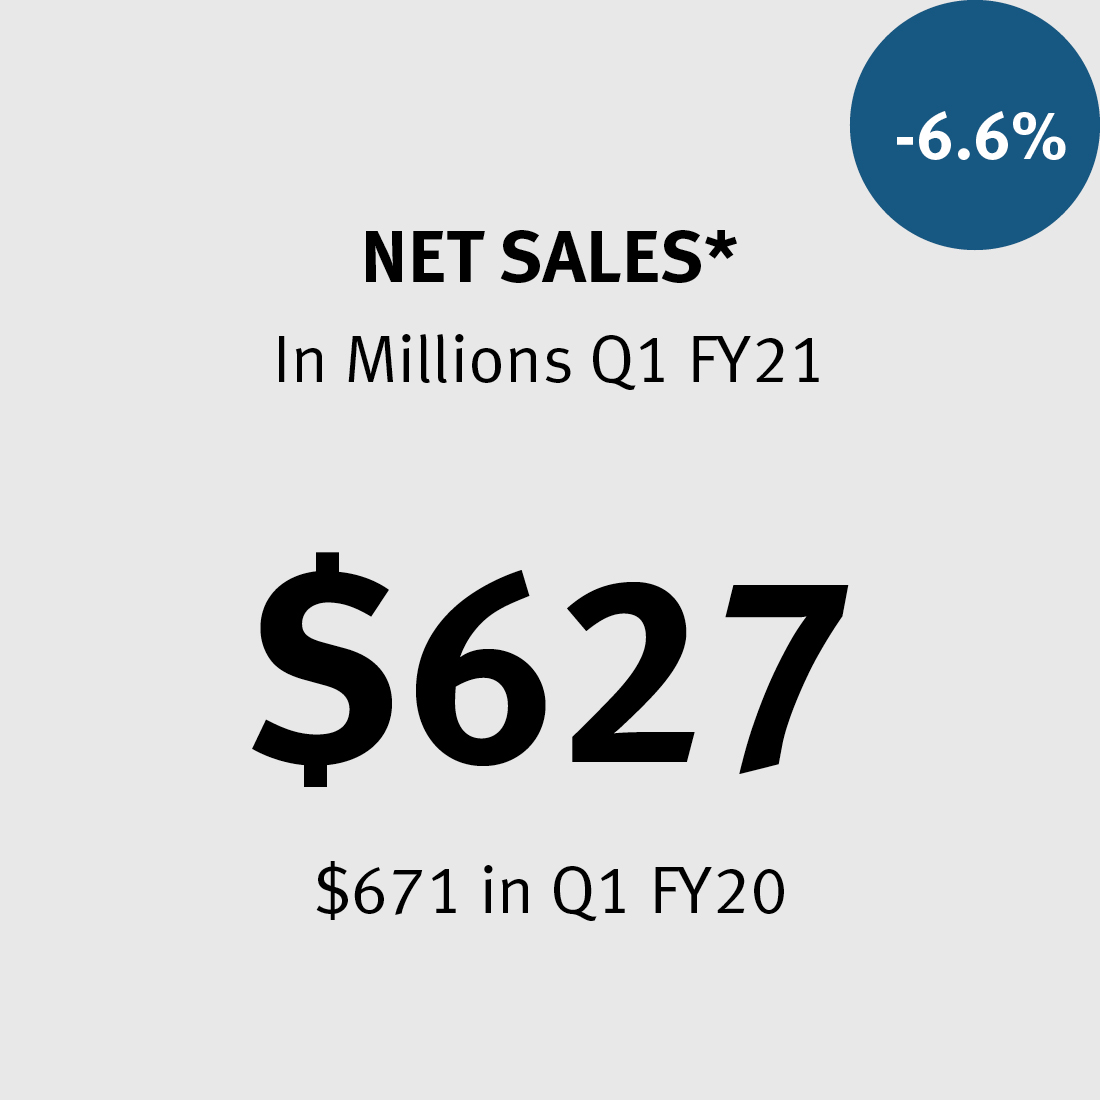 Net Sales * $627M ($671 in FY20) -6.6%